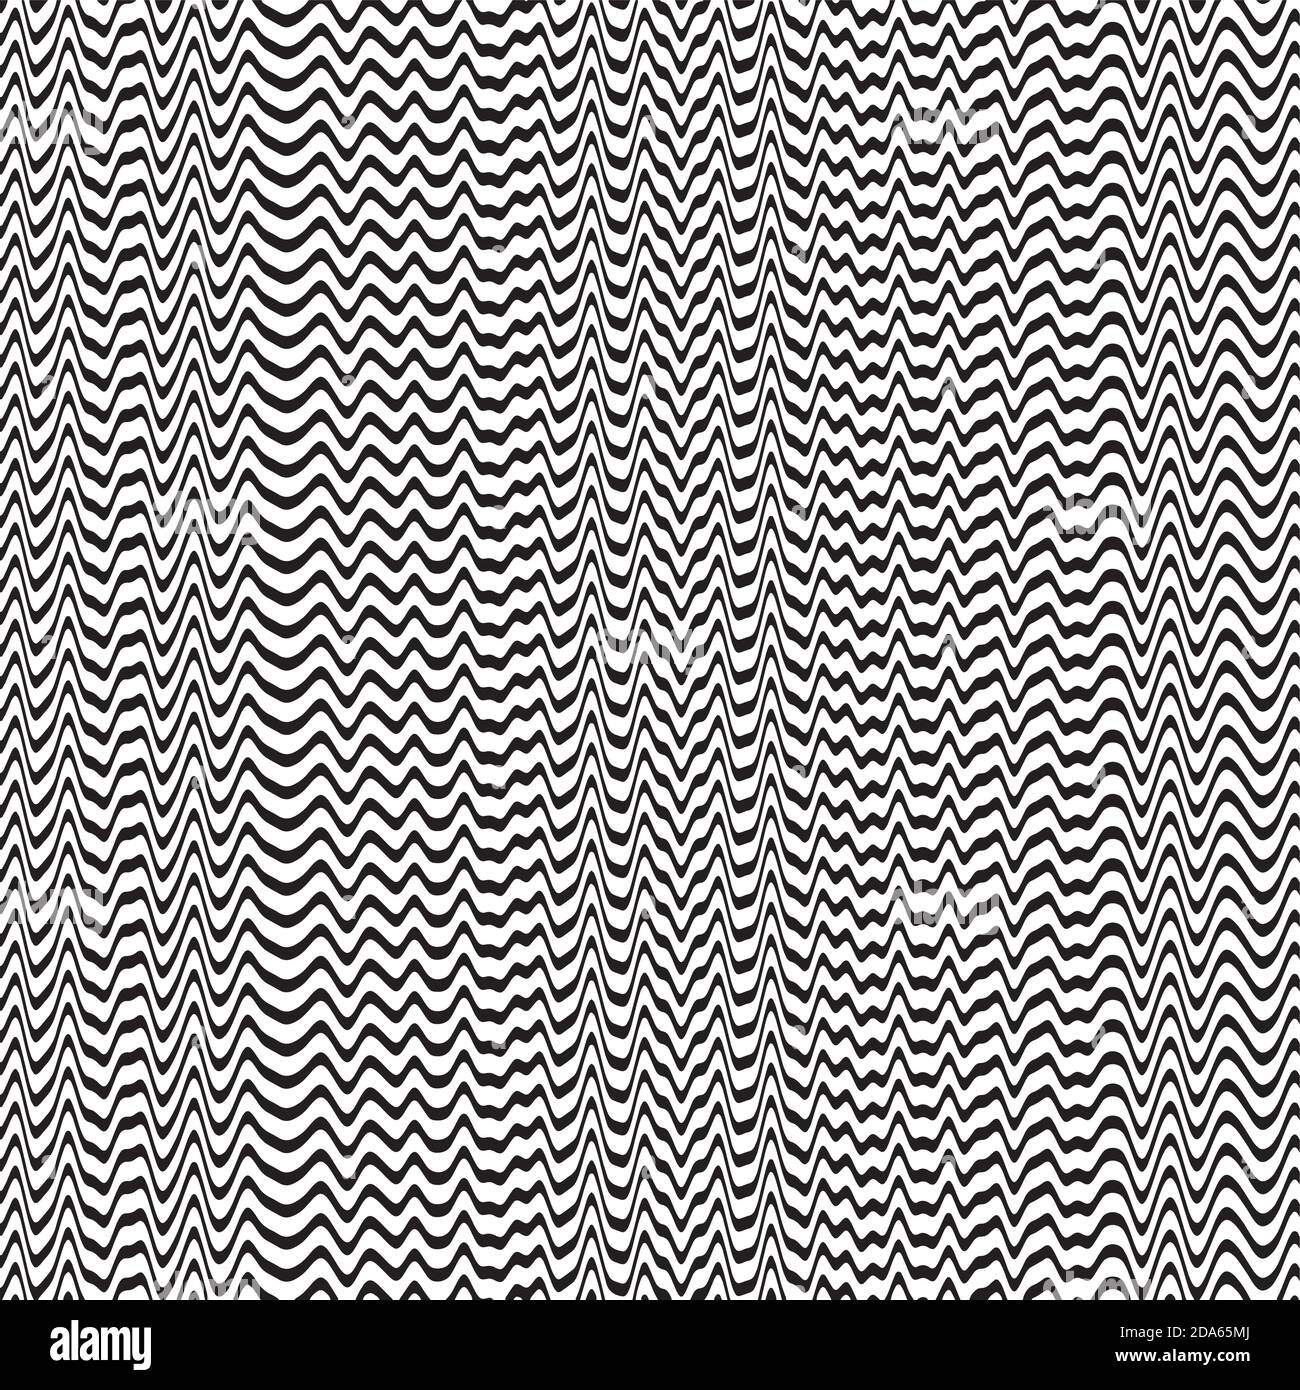 Illustration Vektor abstrakter Hintergrund mit schwarzen und weißen Wellenlinien Stock Vektor